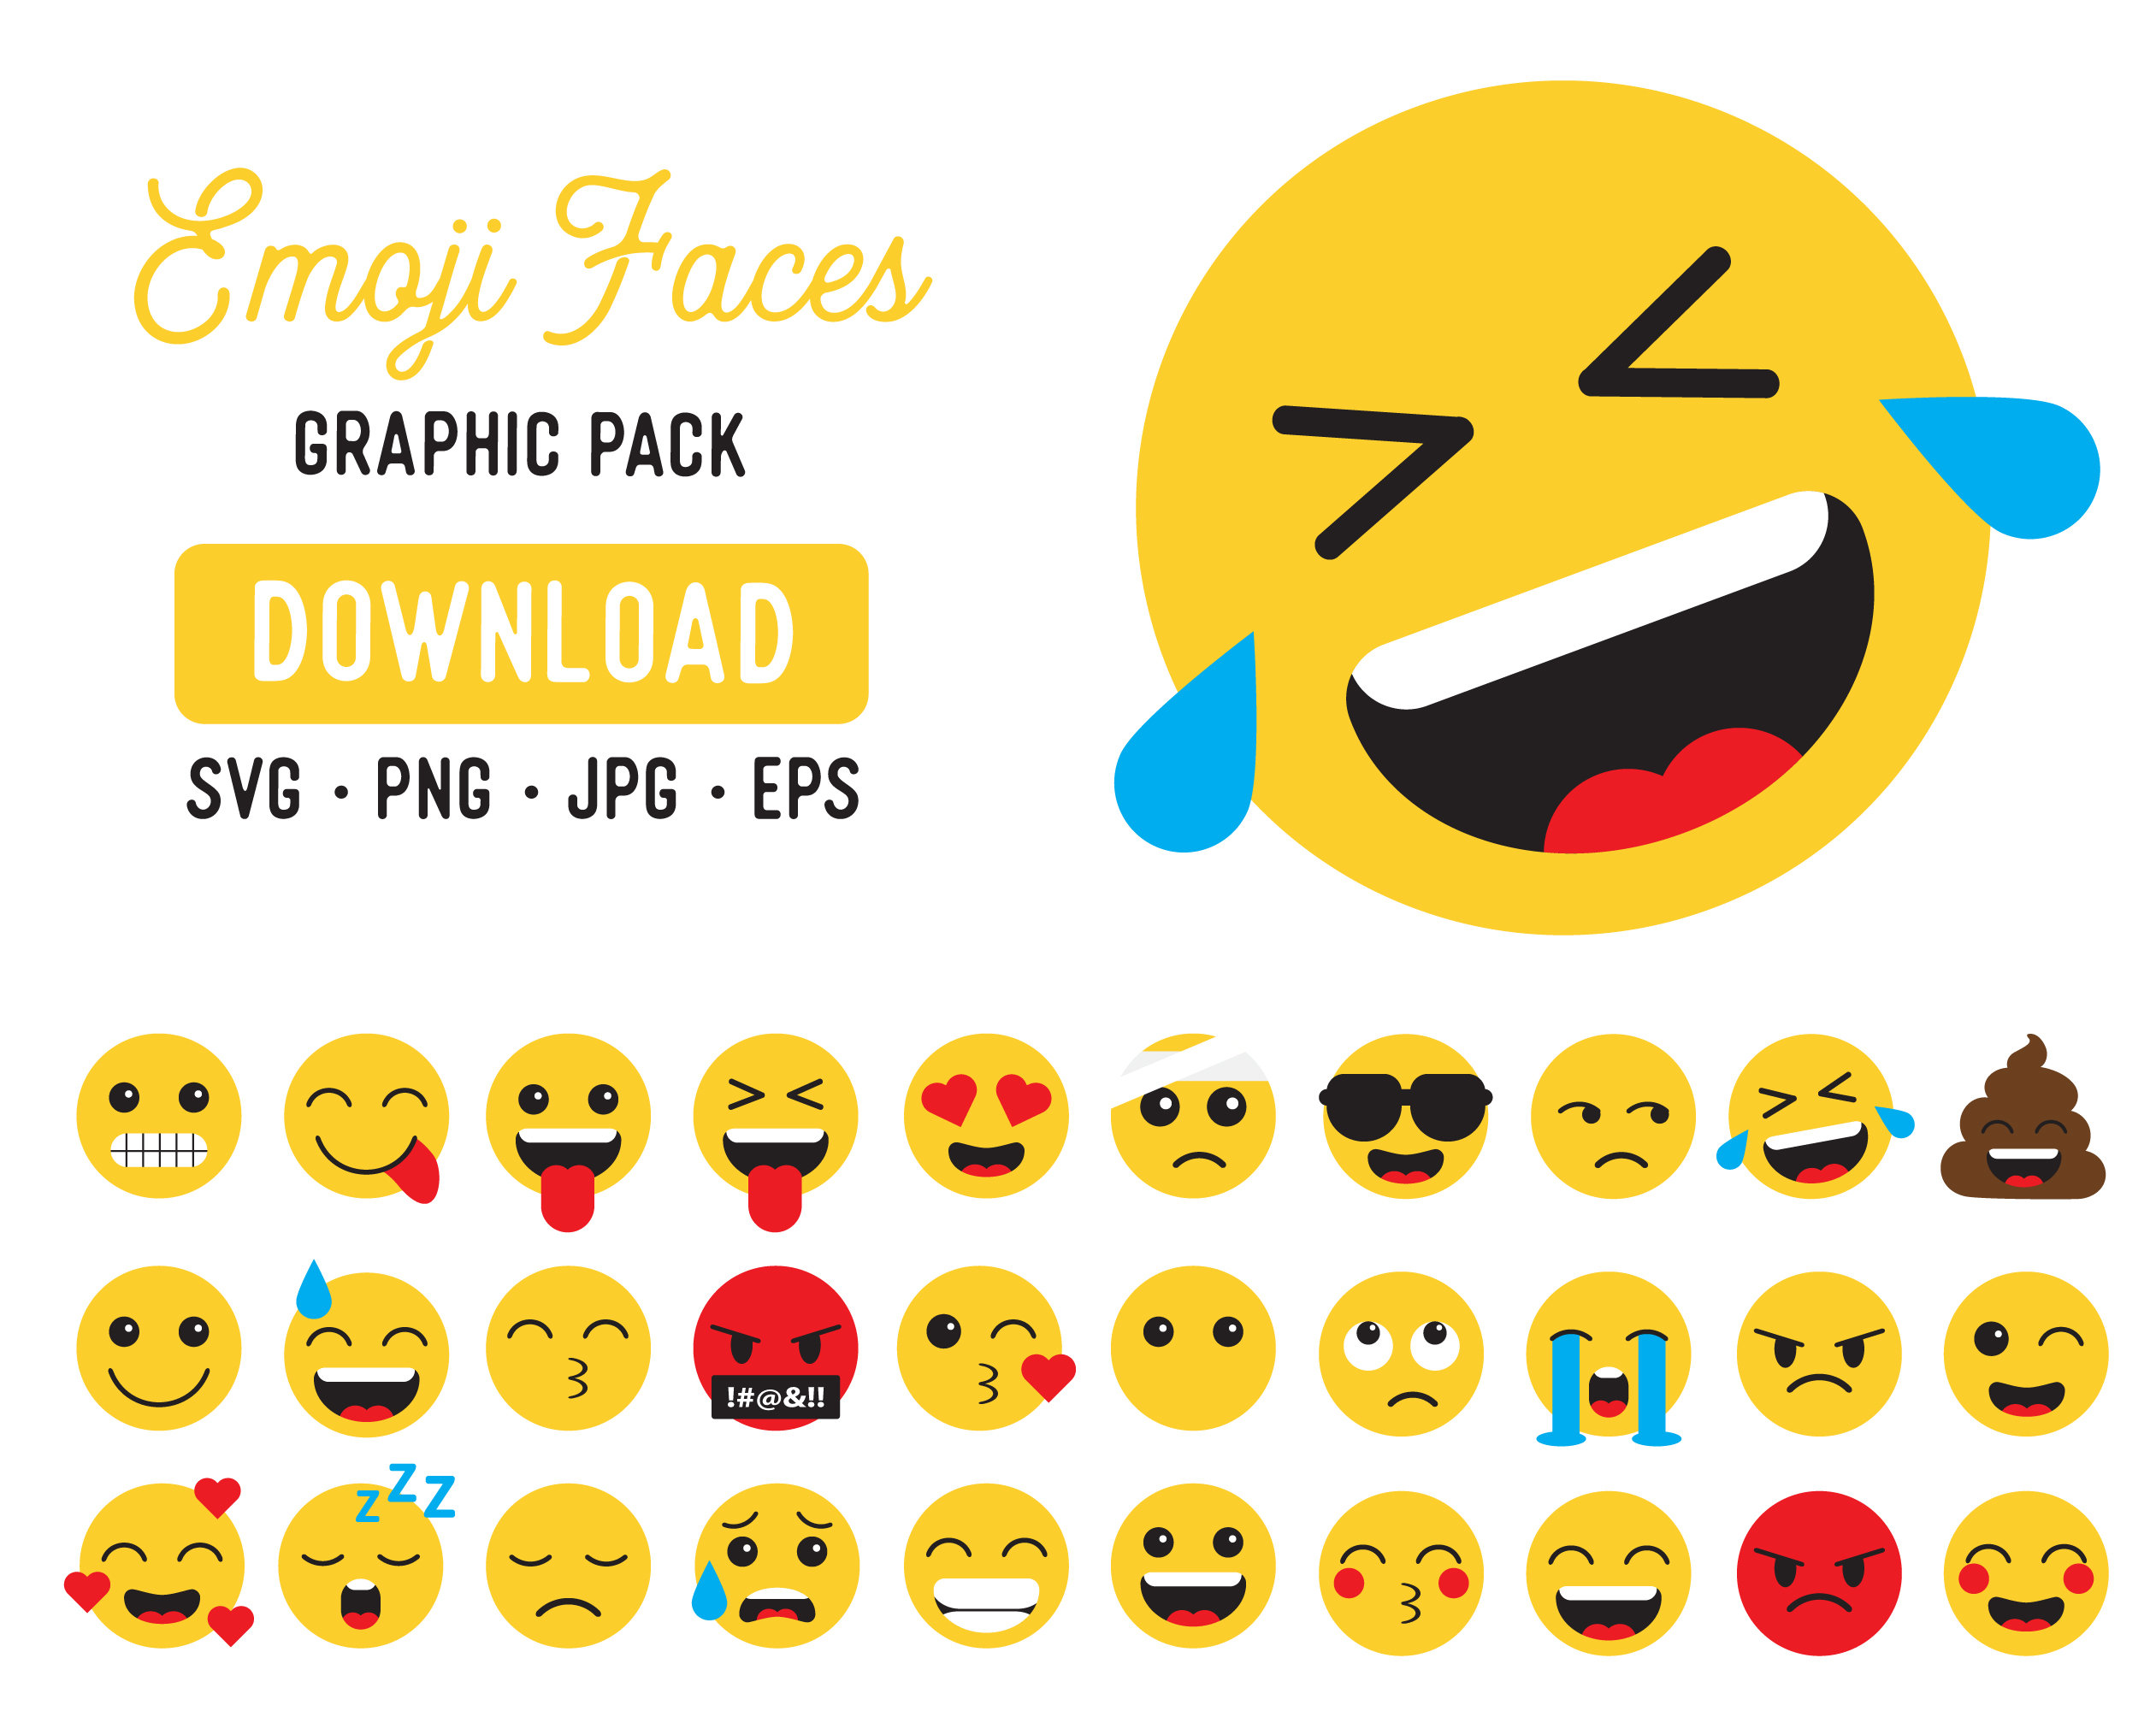 lindos emojis emoji icon in PNG, SVG